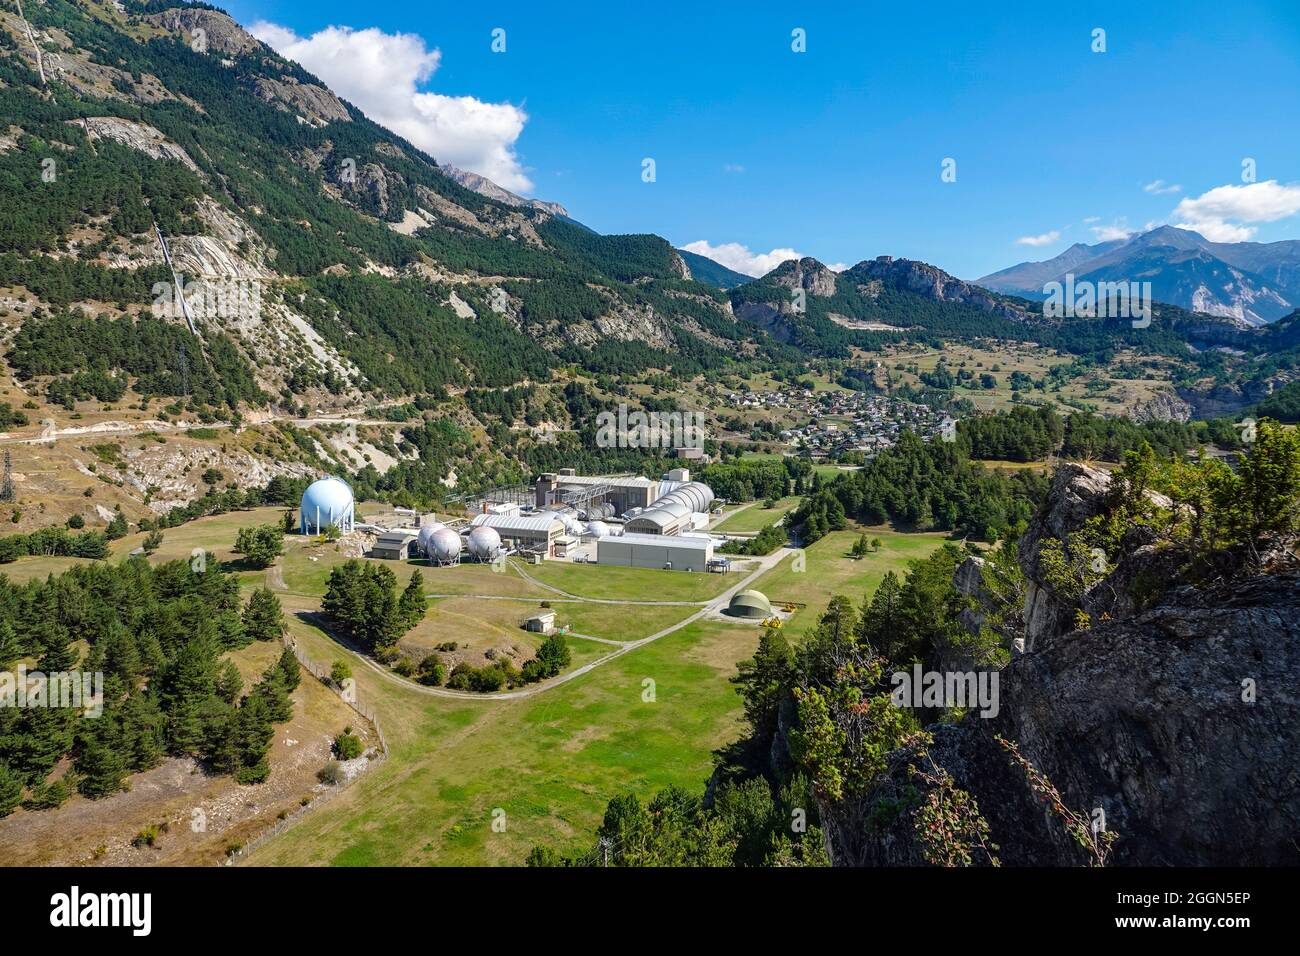 Mavic Drohne Foto von ONERA, dem französischen Luft- und Raumfahrtlabor, im Maurienne-Tal, französische Alpen, Frankreich Stockfoto